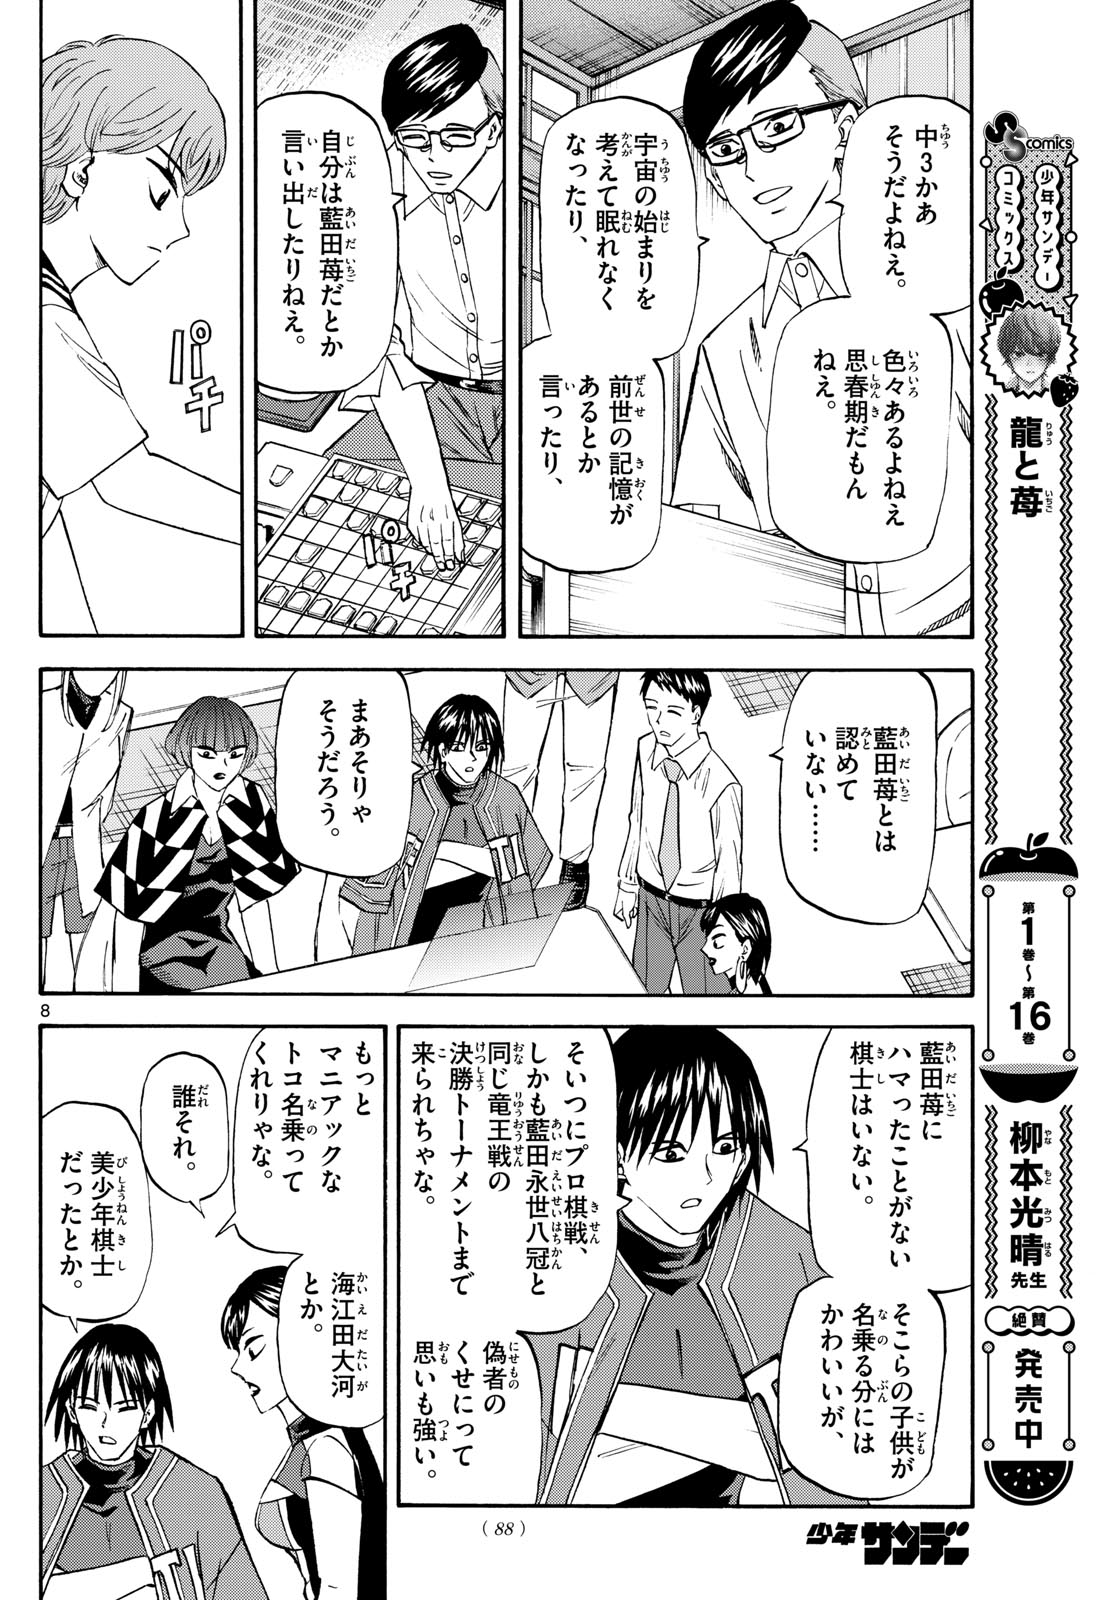 Tatsu to Ichigo - Chapter 196 - Page 8